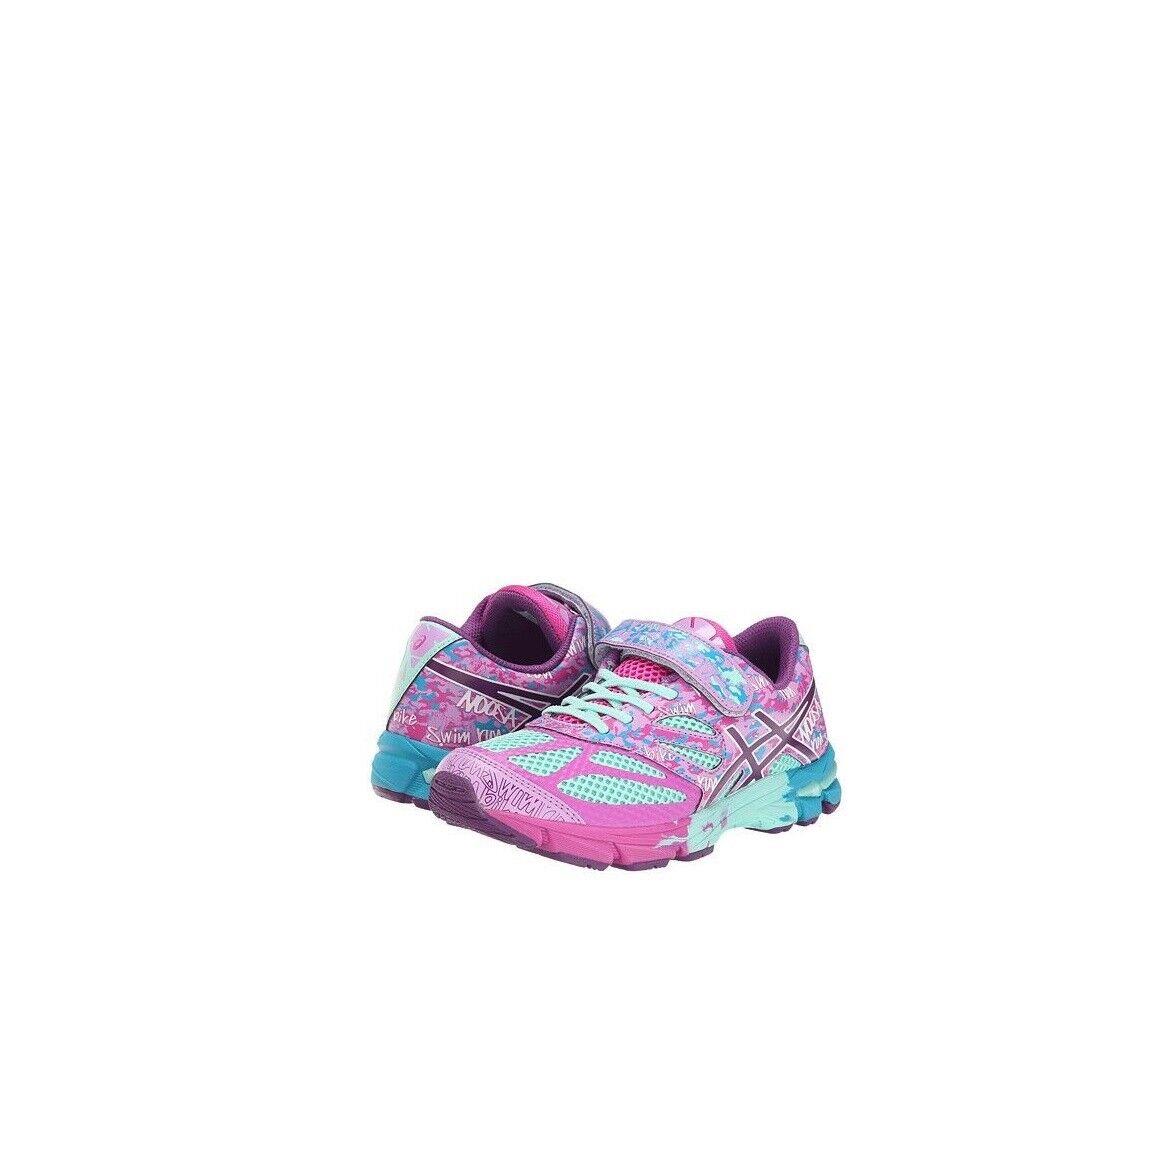 Asics Gel Noosa Tri 10 PS Little Kid Running Shoe Beach Glass/plum Pink 2.5M